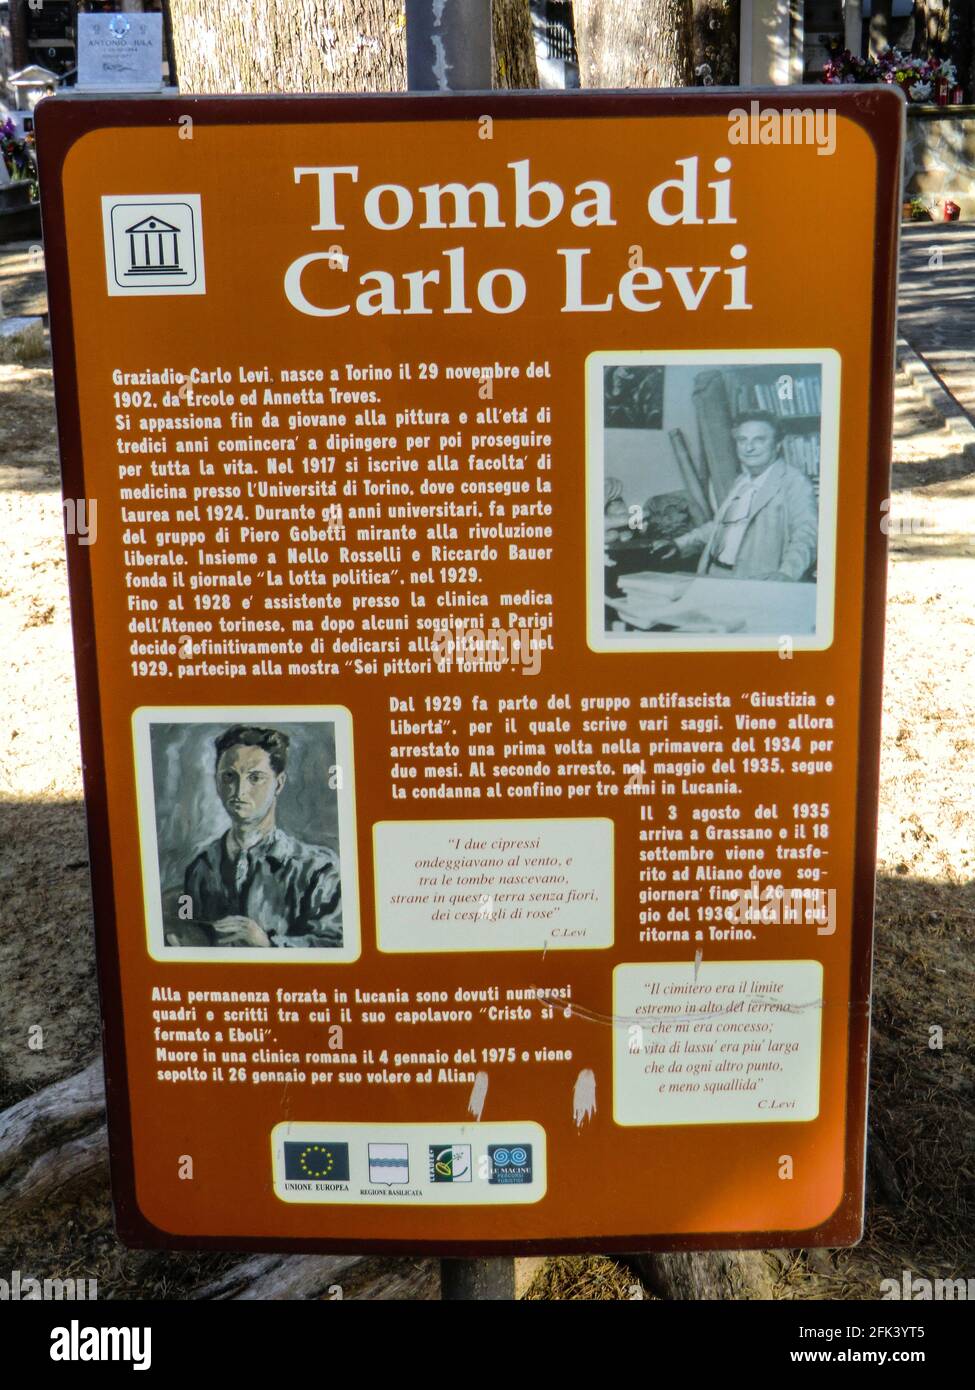 Informationen über Carlo Levi's Grave Yard, einen italienisch-jüdischen Maler, Schriftsteller, Aktivisten, Antifaschisten und Arzt, Grab auf dem Friedhof Aliano, Basilikata, Stockfoto